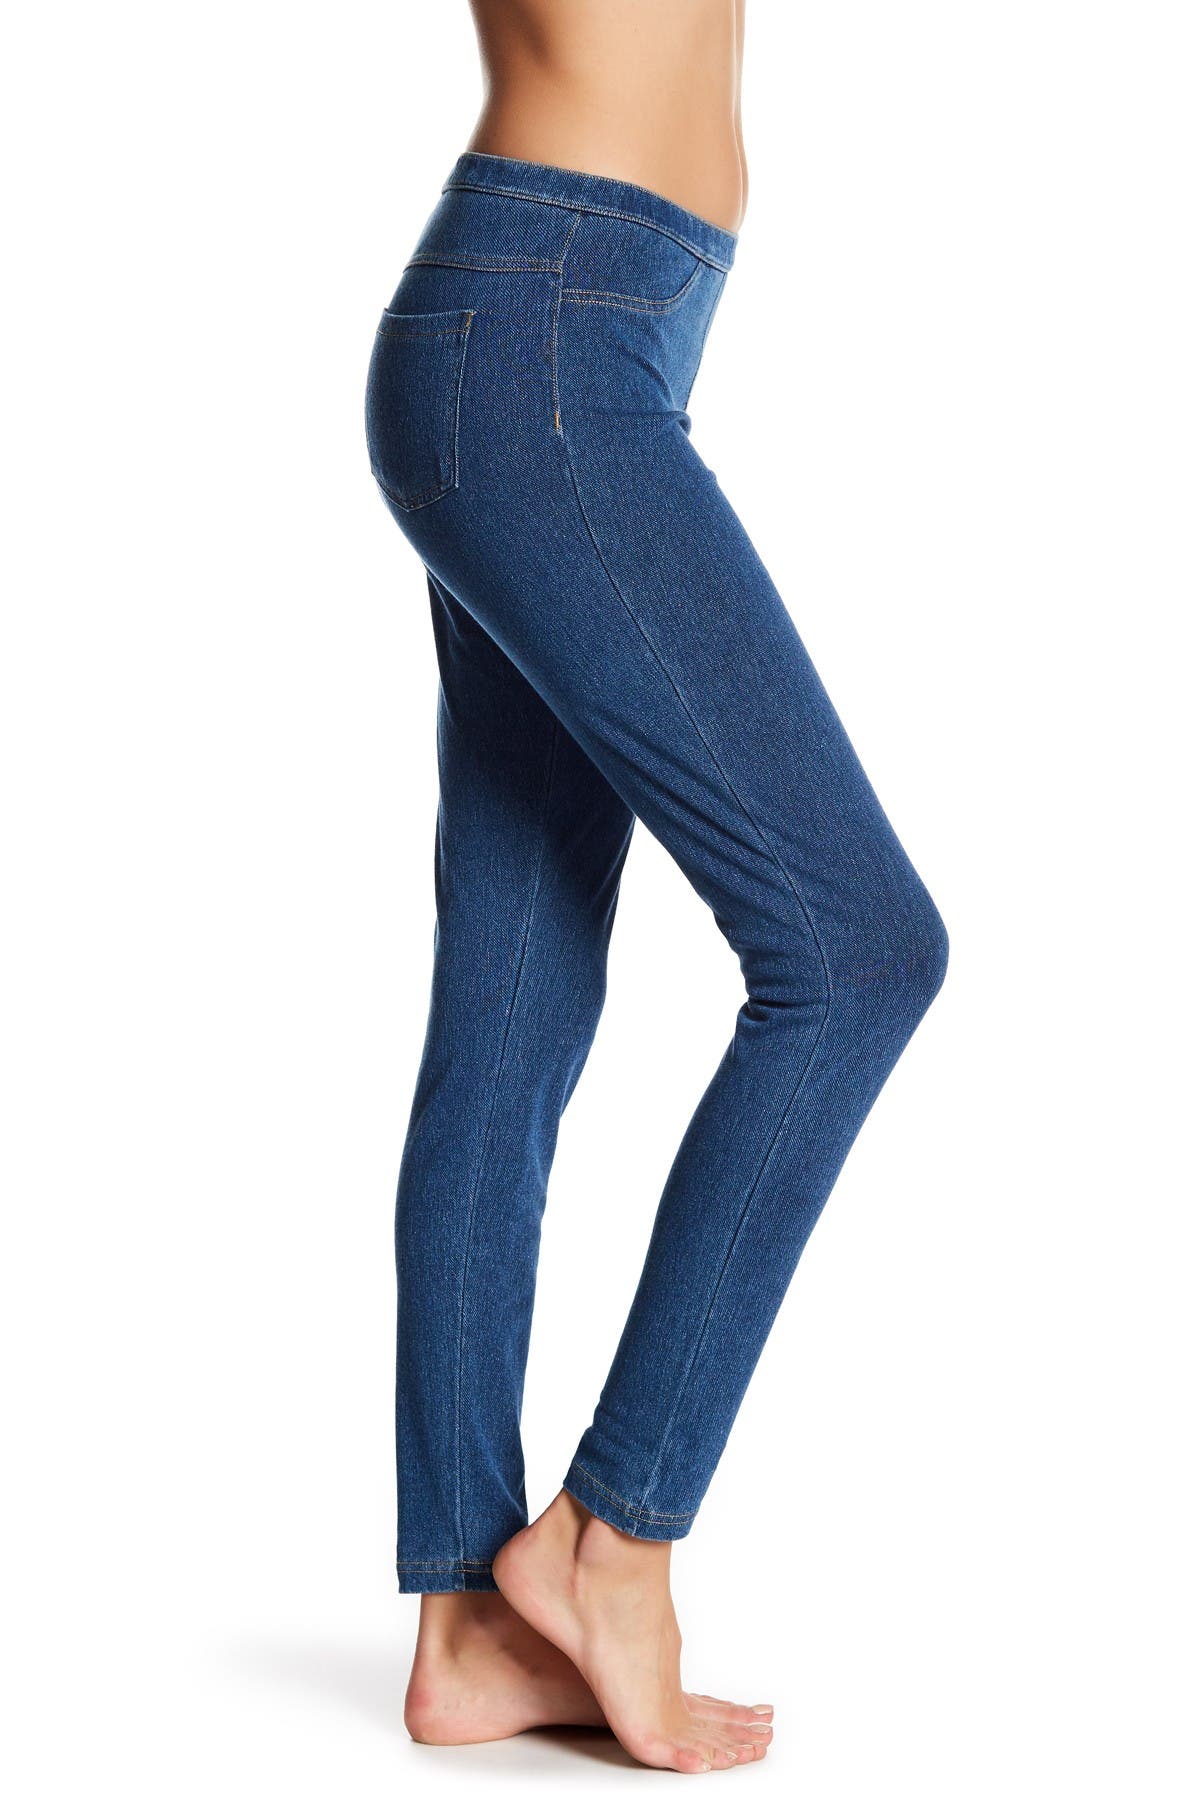 hue jeans leggings sale